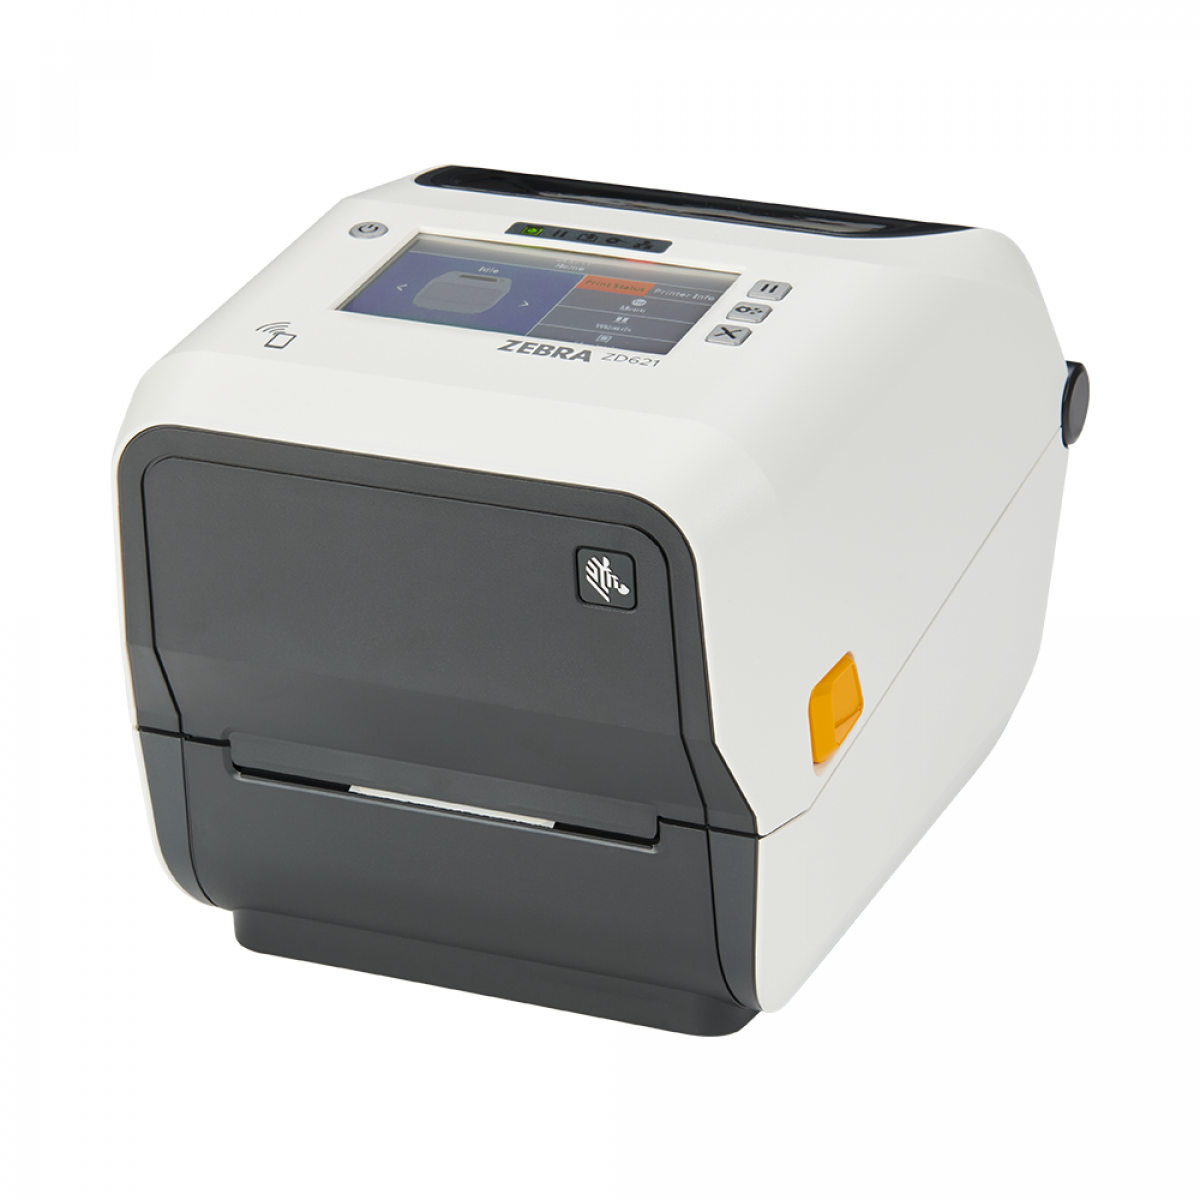 Zebra ZD621tt-HC barcode label printer for healthcare